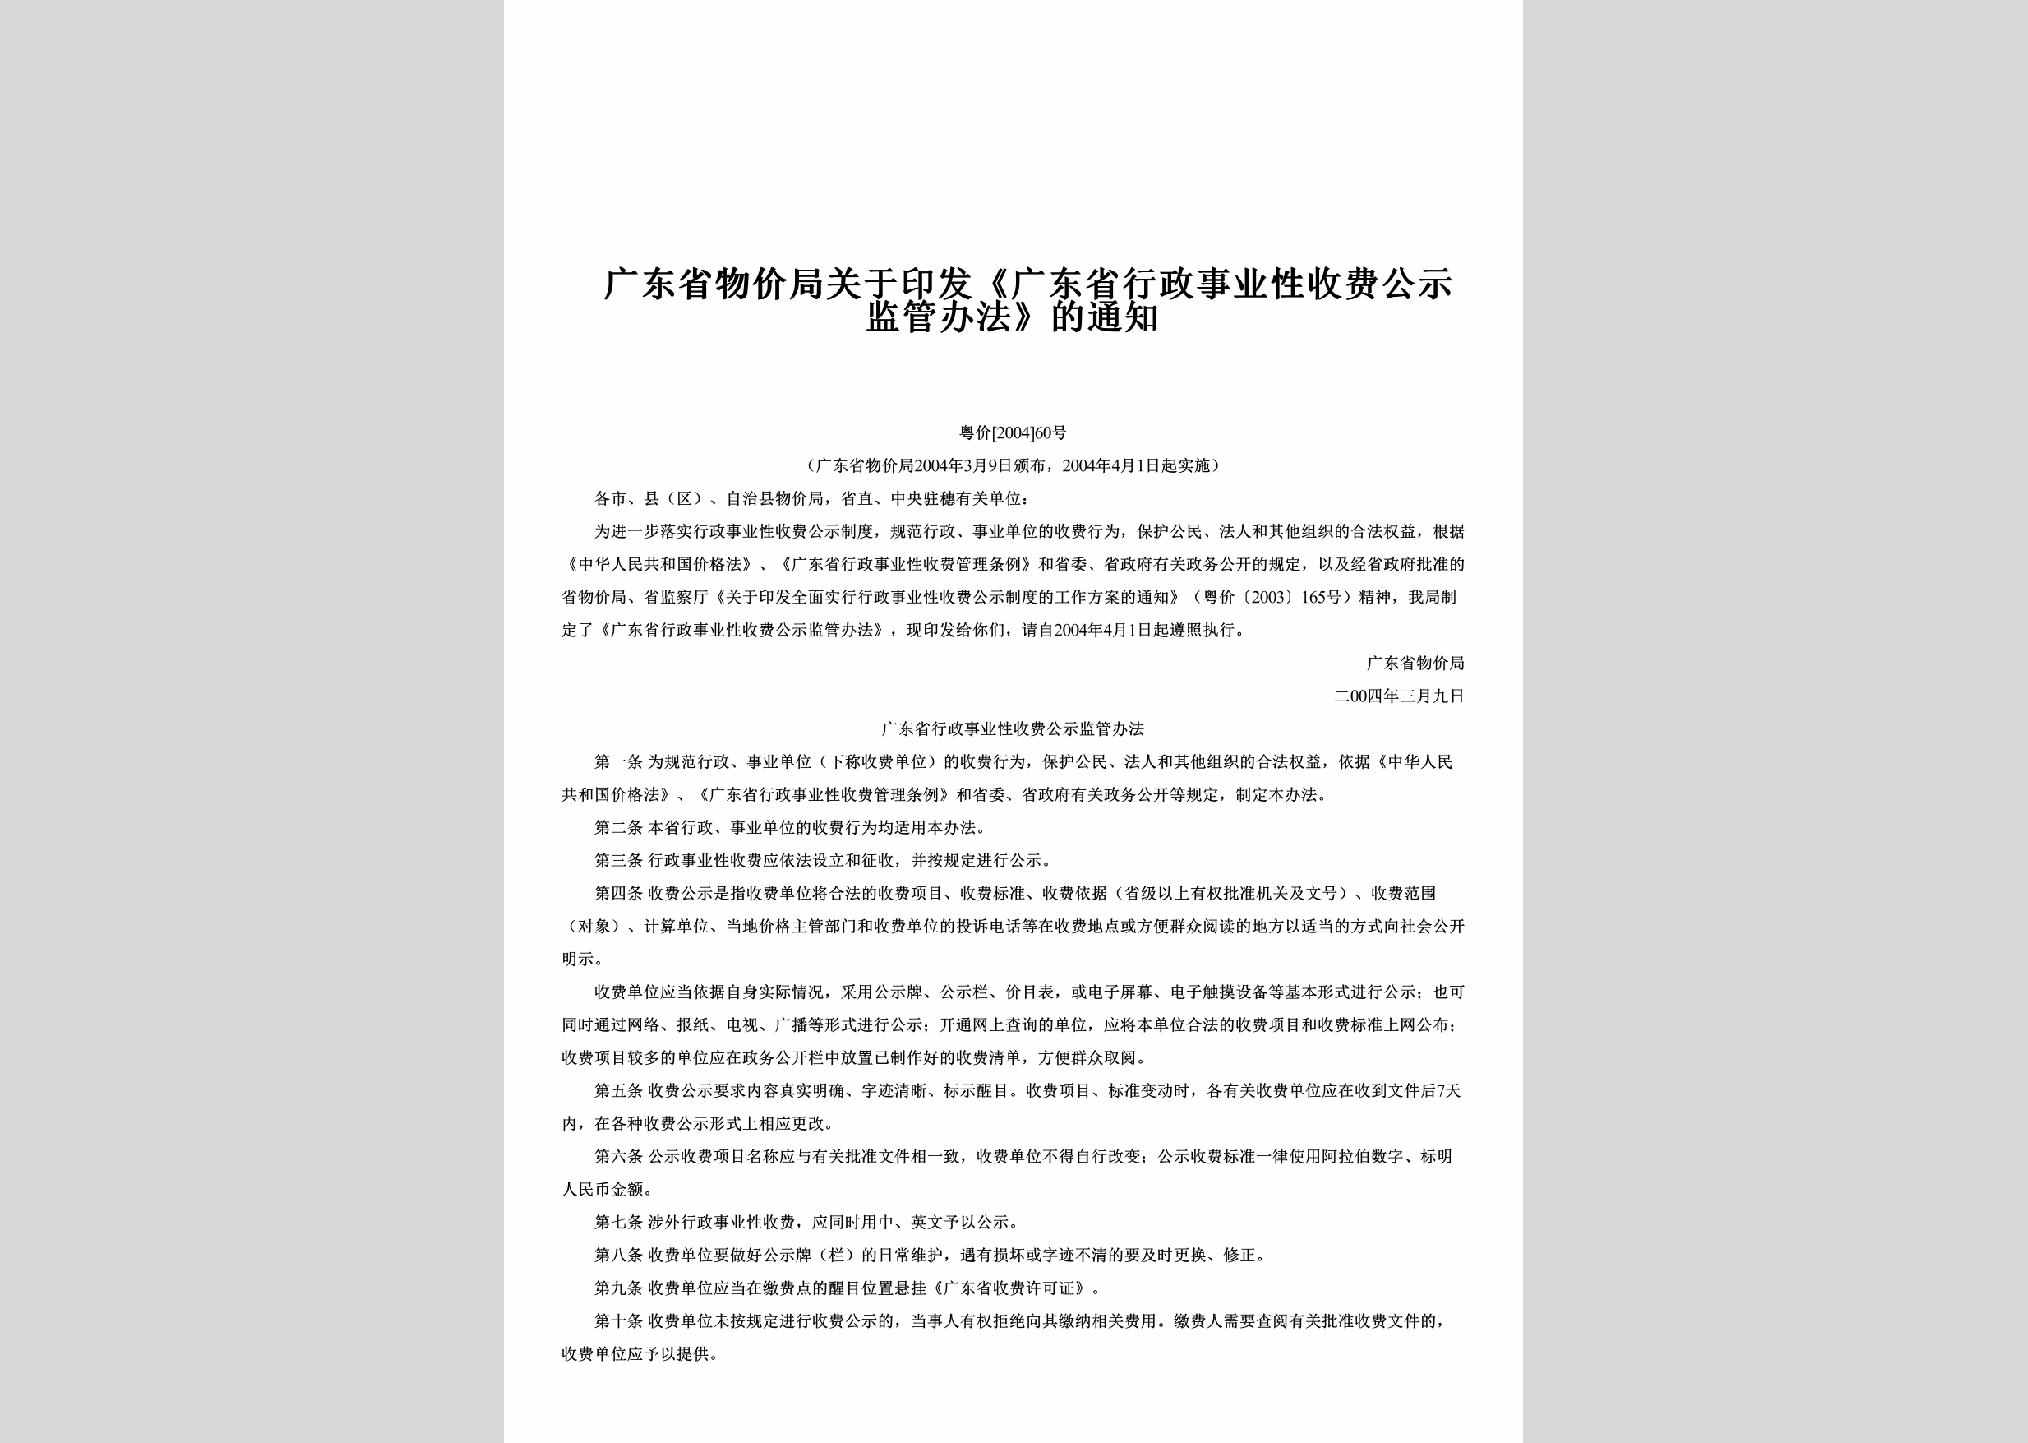 粤价[2004]60号：关于印发《广东省行政事业性收费公示监管办法》的通知